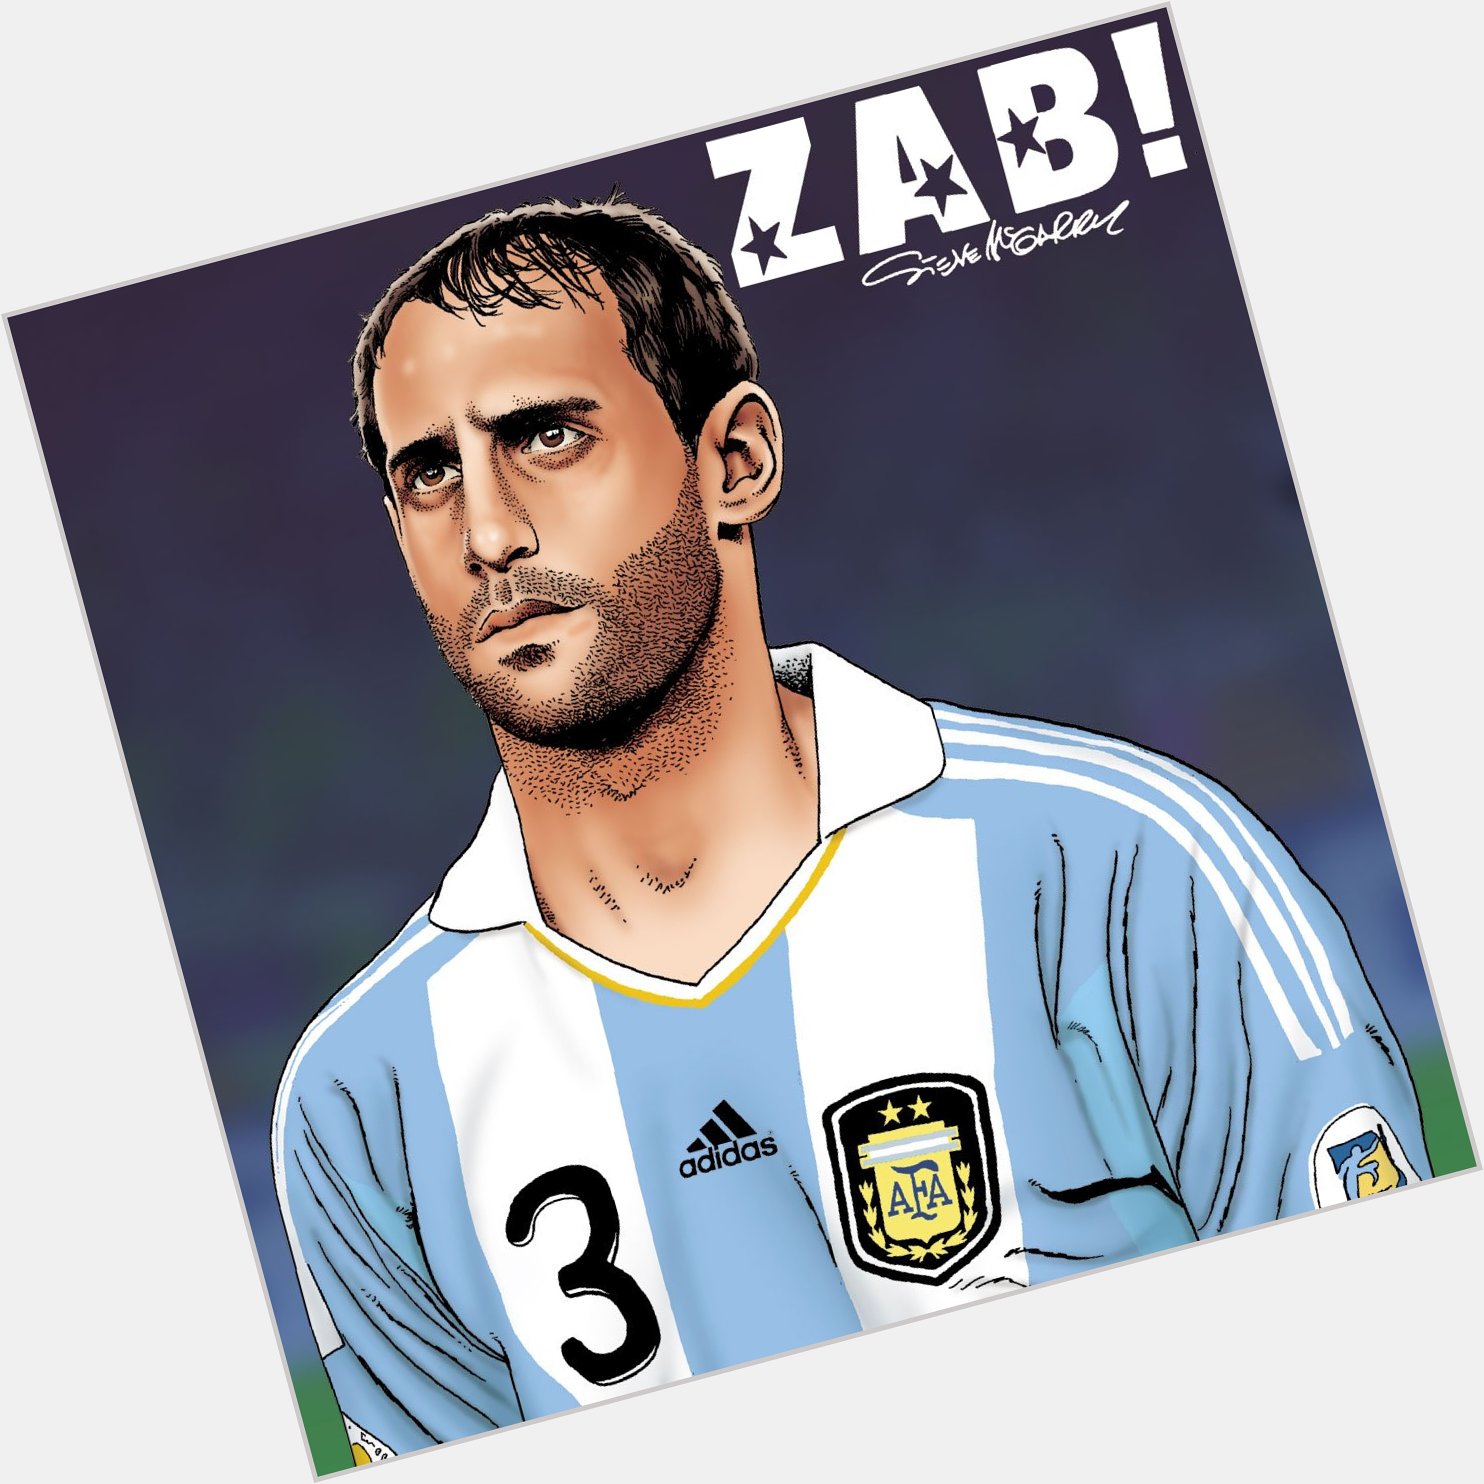 Happy 33rd birthday Man City legend Pablo Zabaleta    